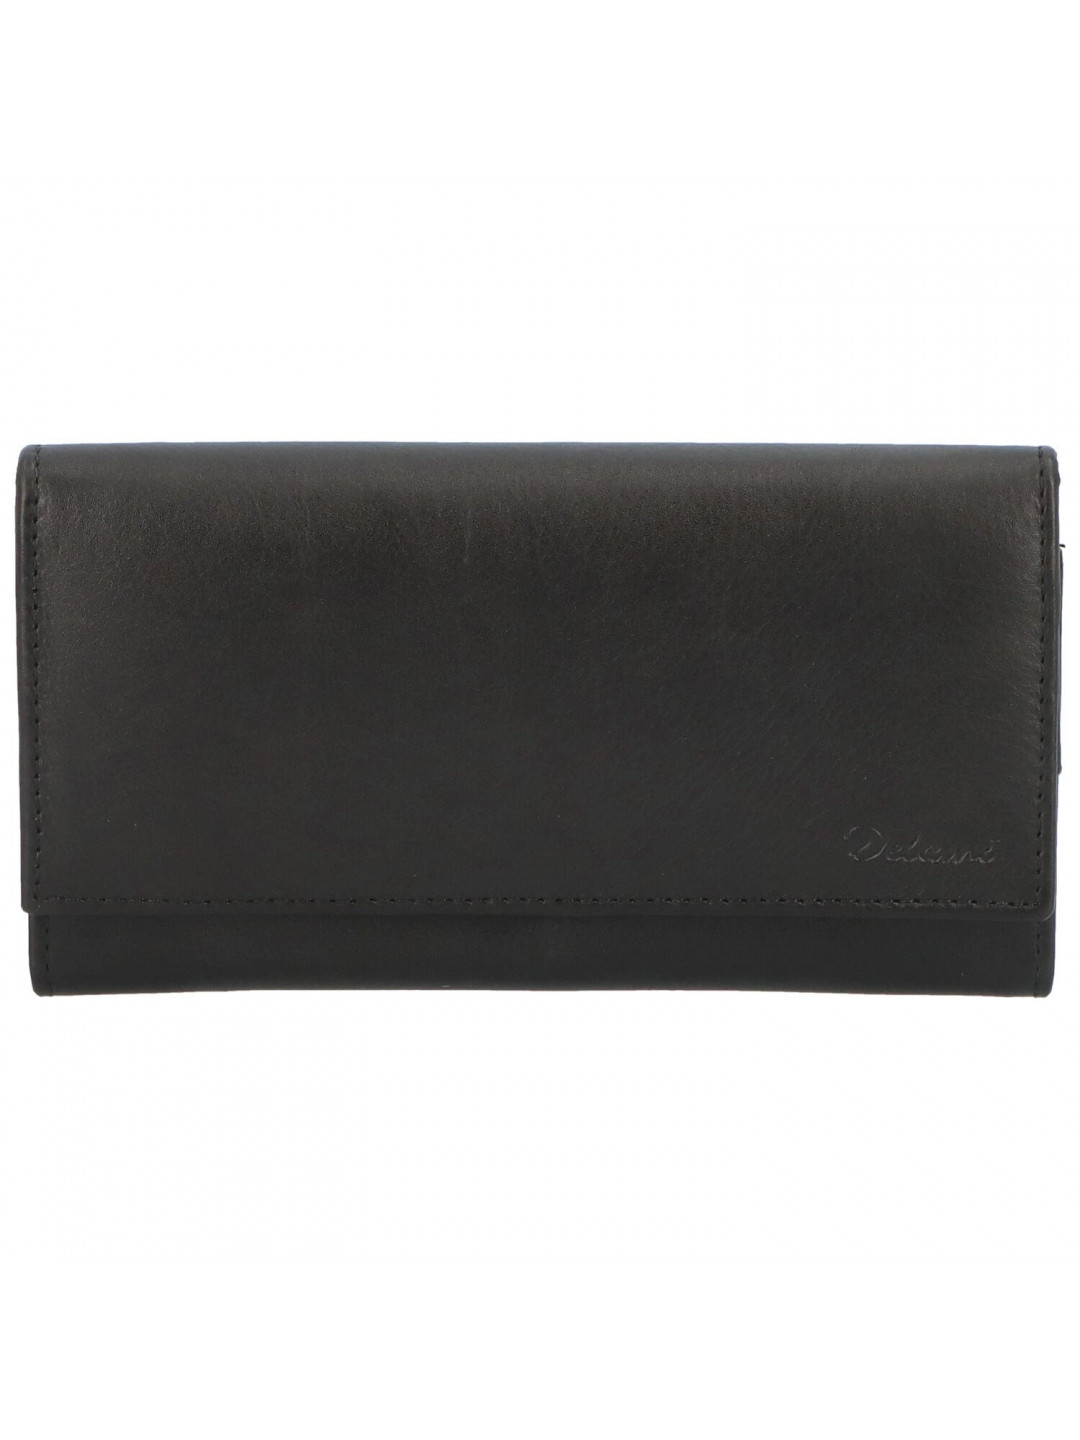 Dámská kožená peněženka černá – Delami Otilia